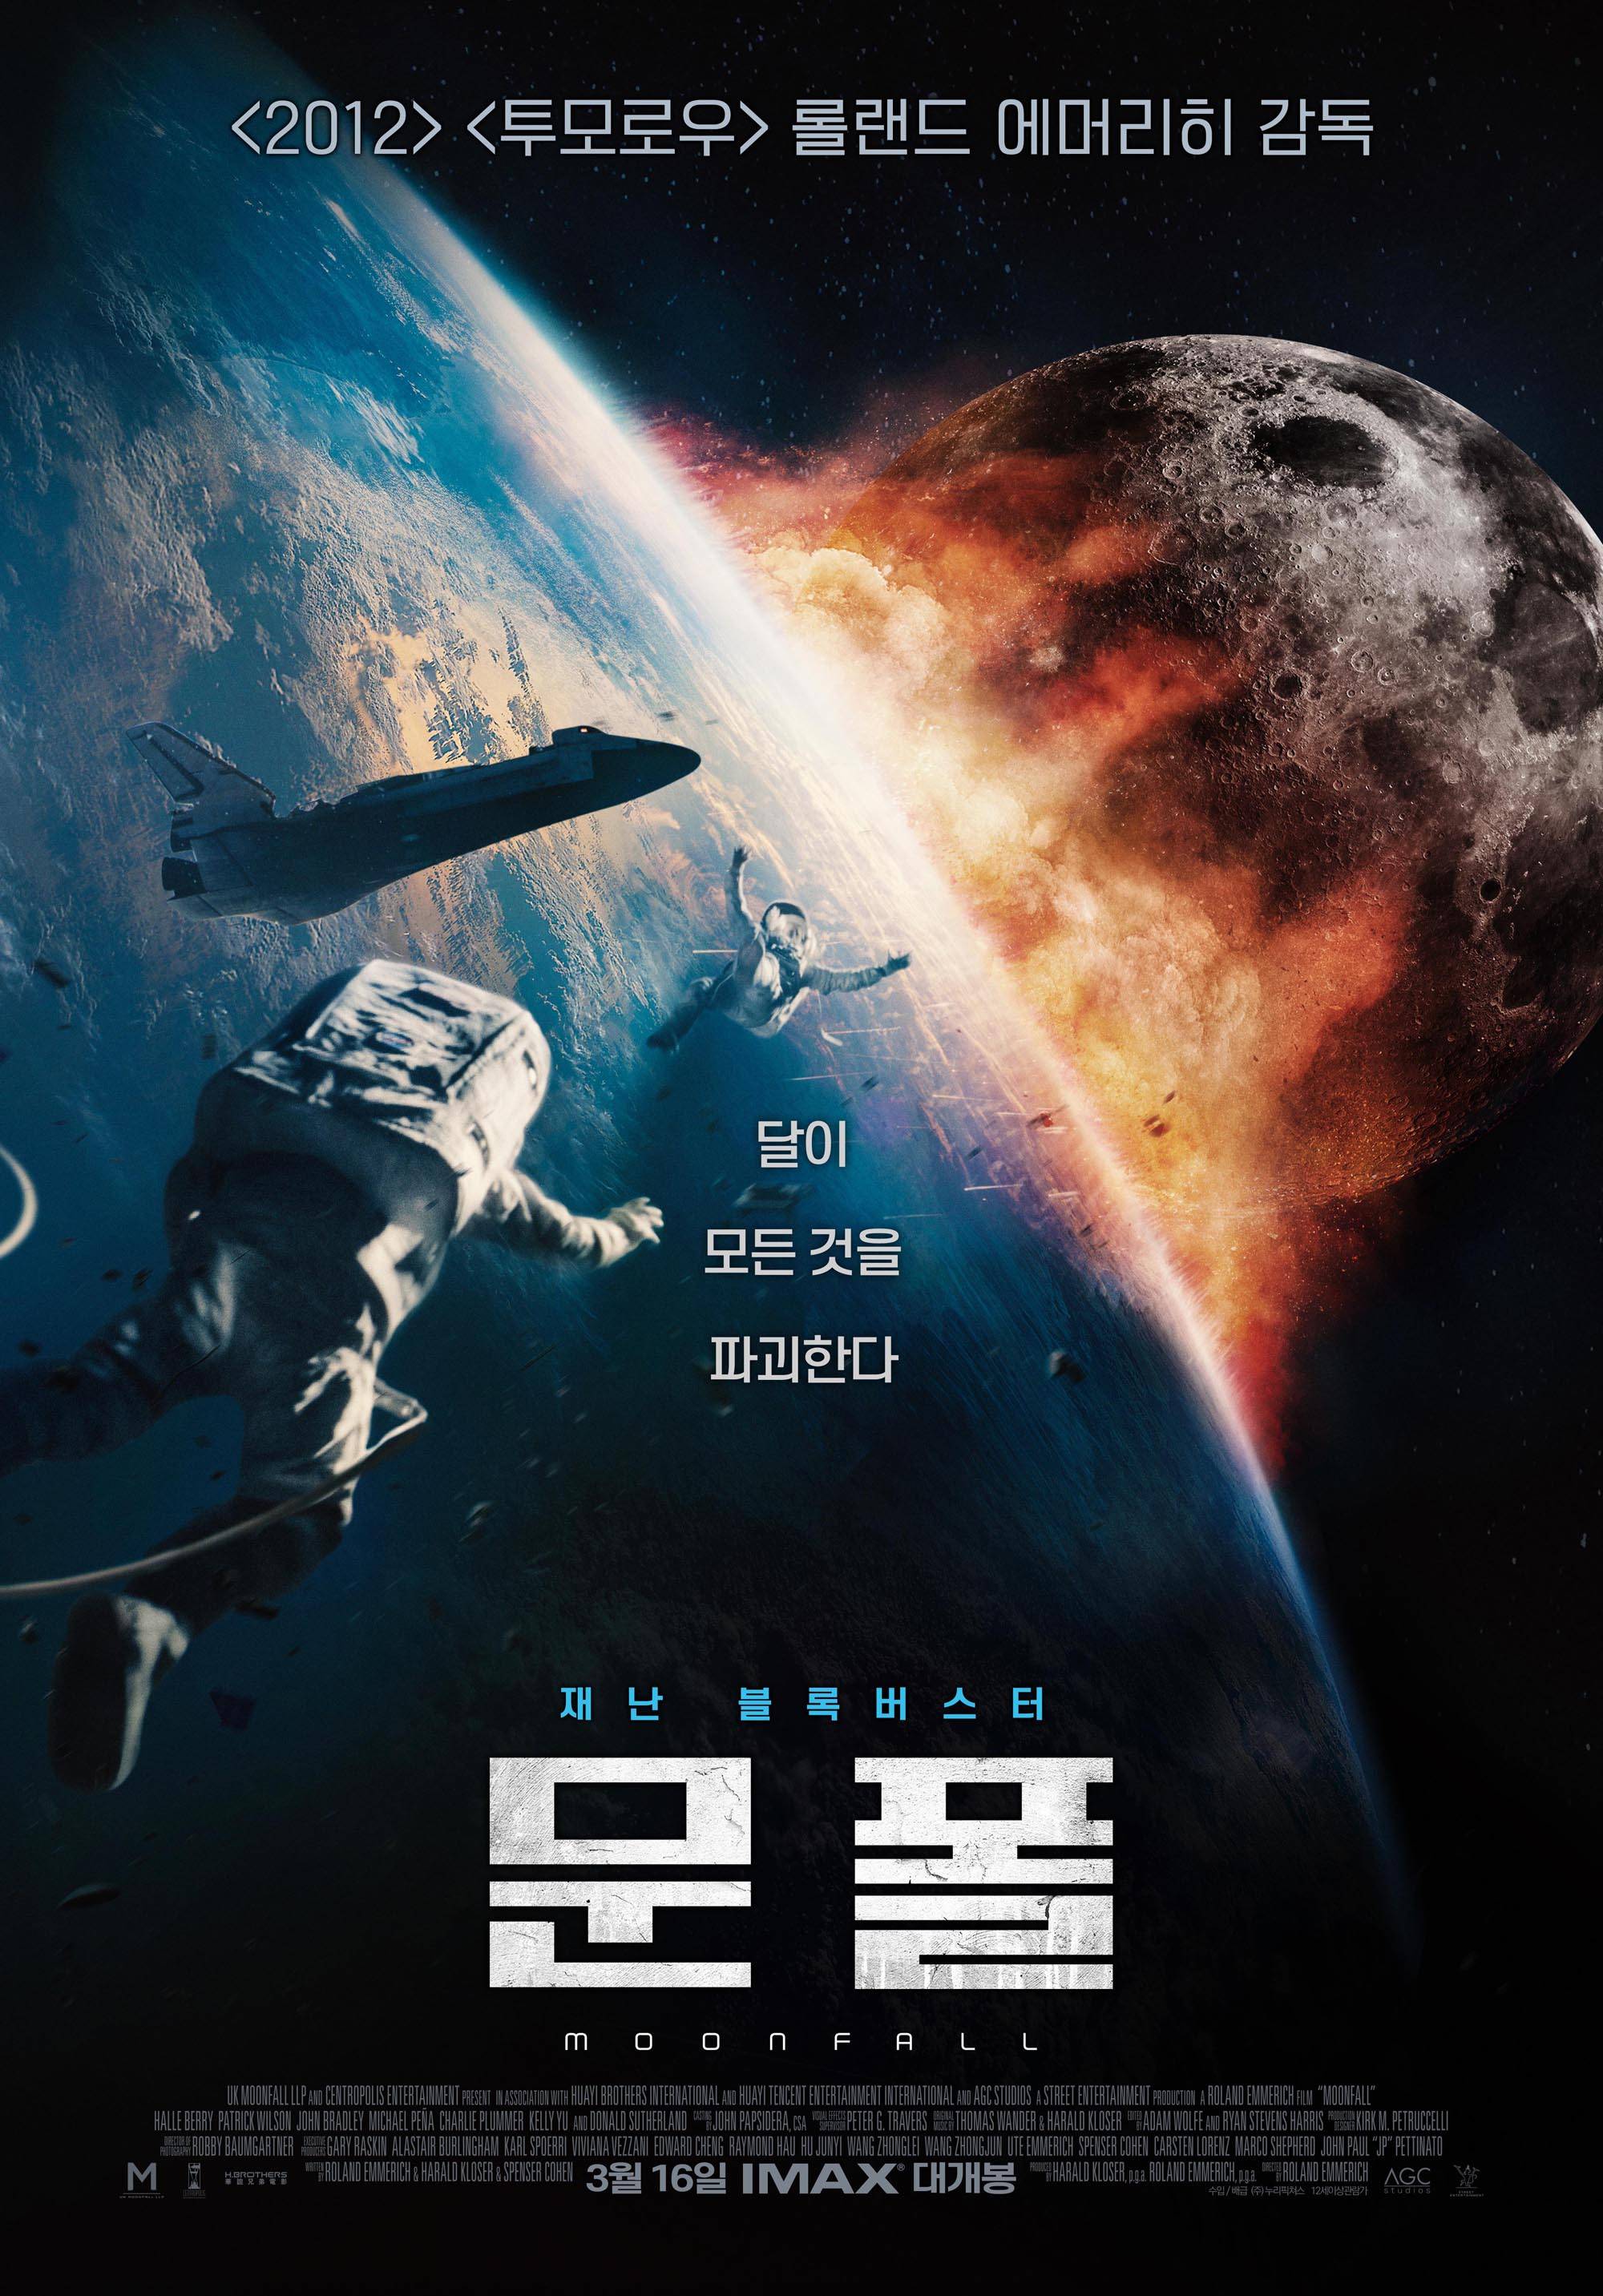 科幻灾难电影《月球陨落》夺韩国周末票房冠军 《奇怪国家的数学家》